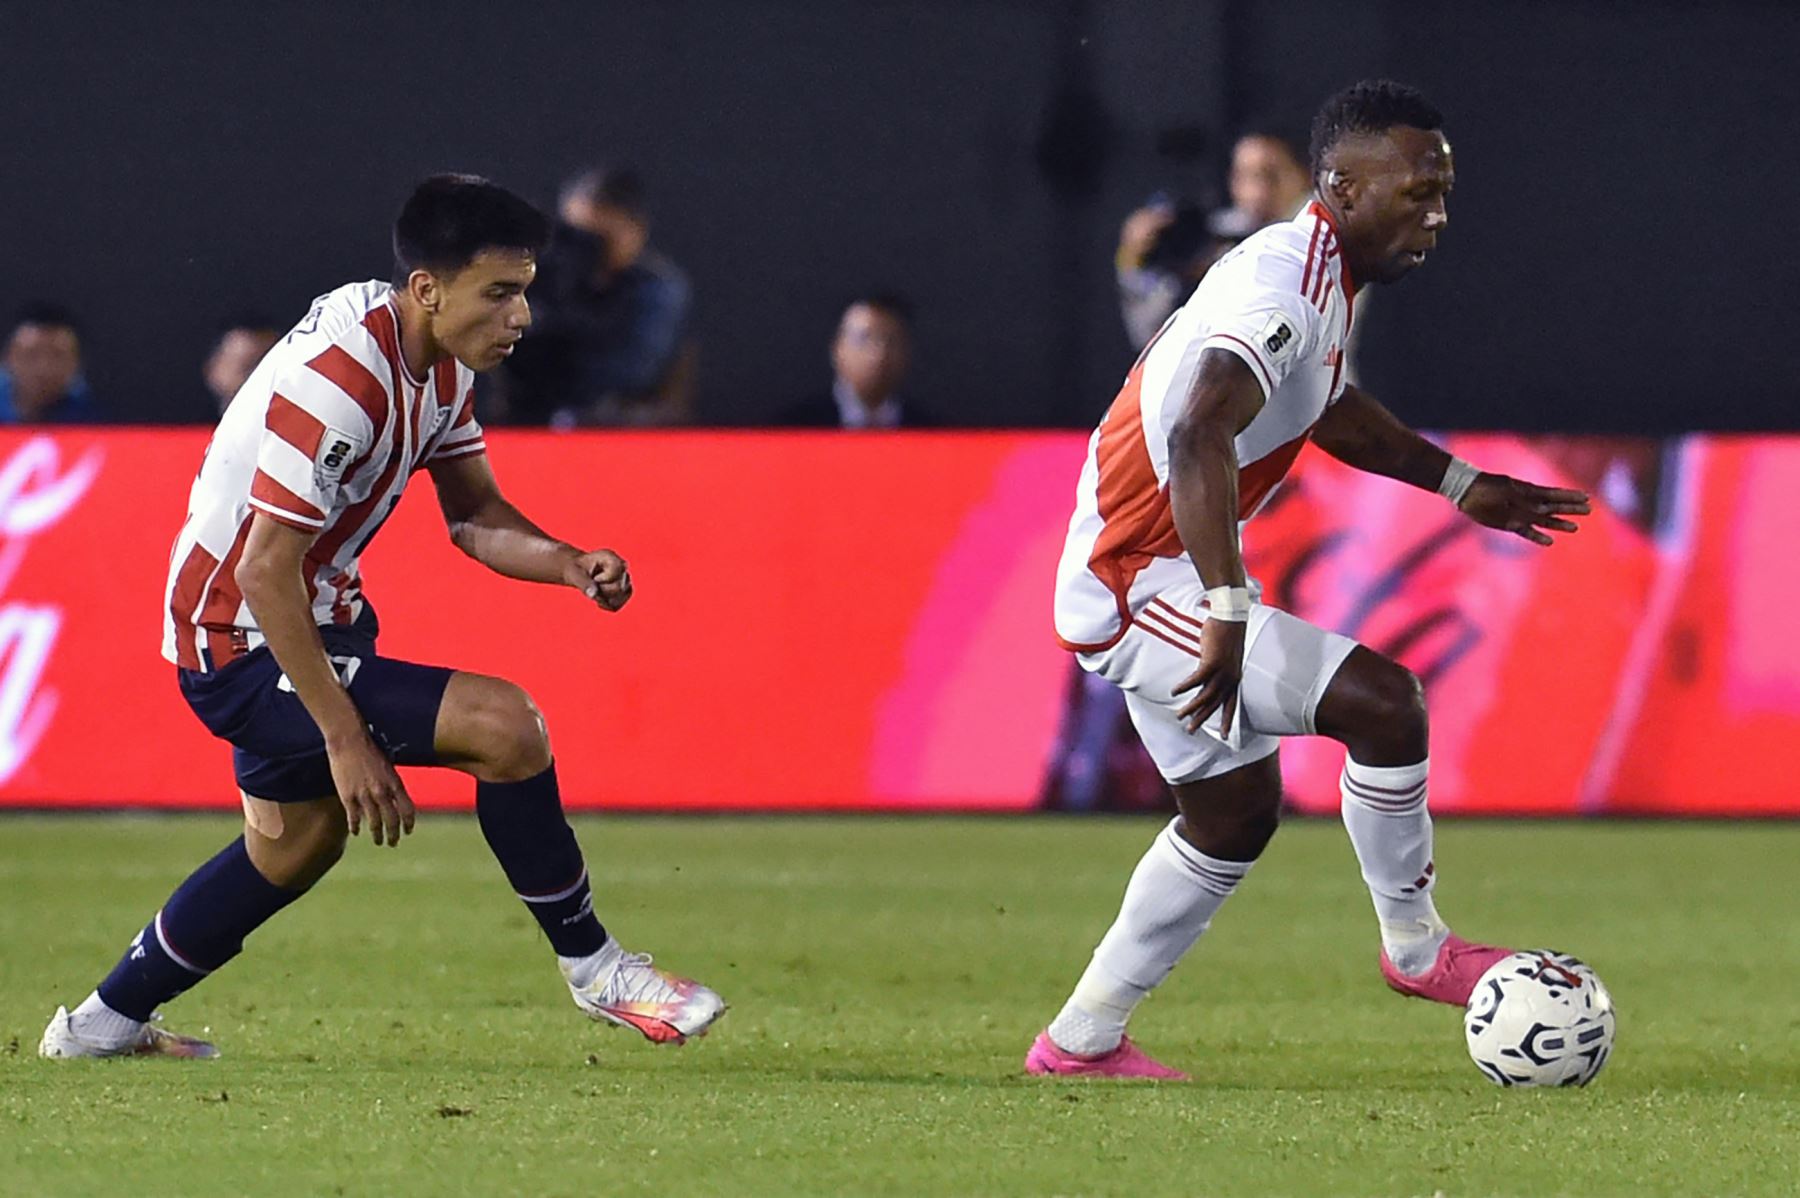 La selección peruana obtiene su primer punto en la ruta hacia el Mundial 2026